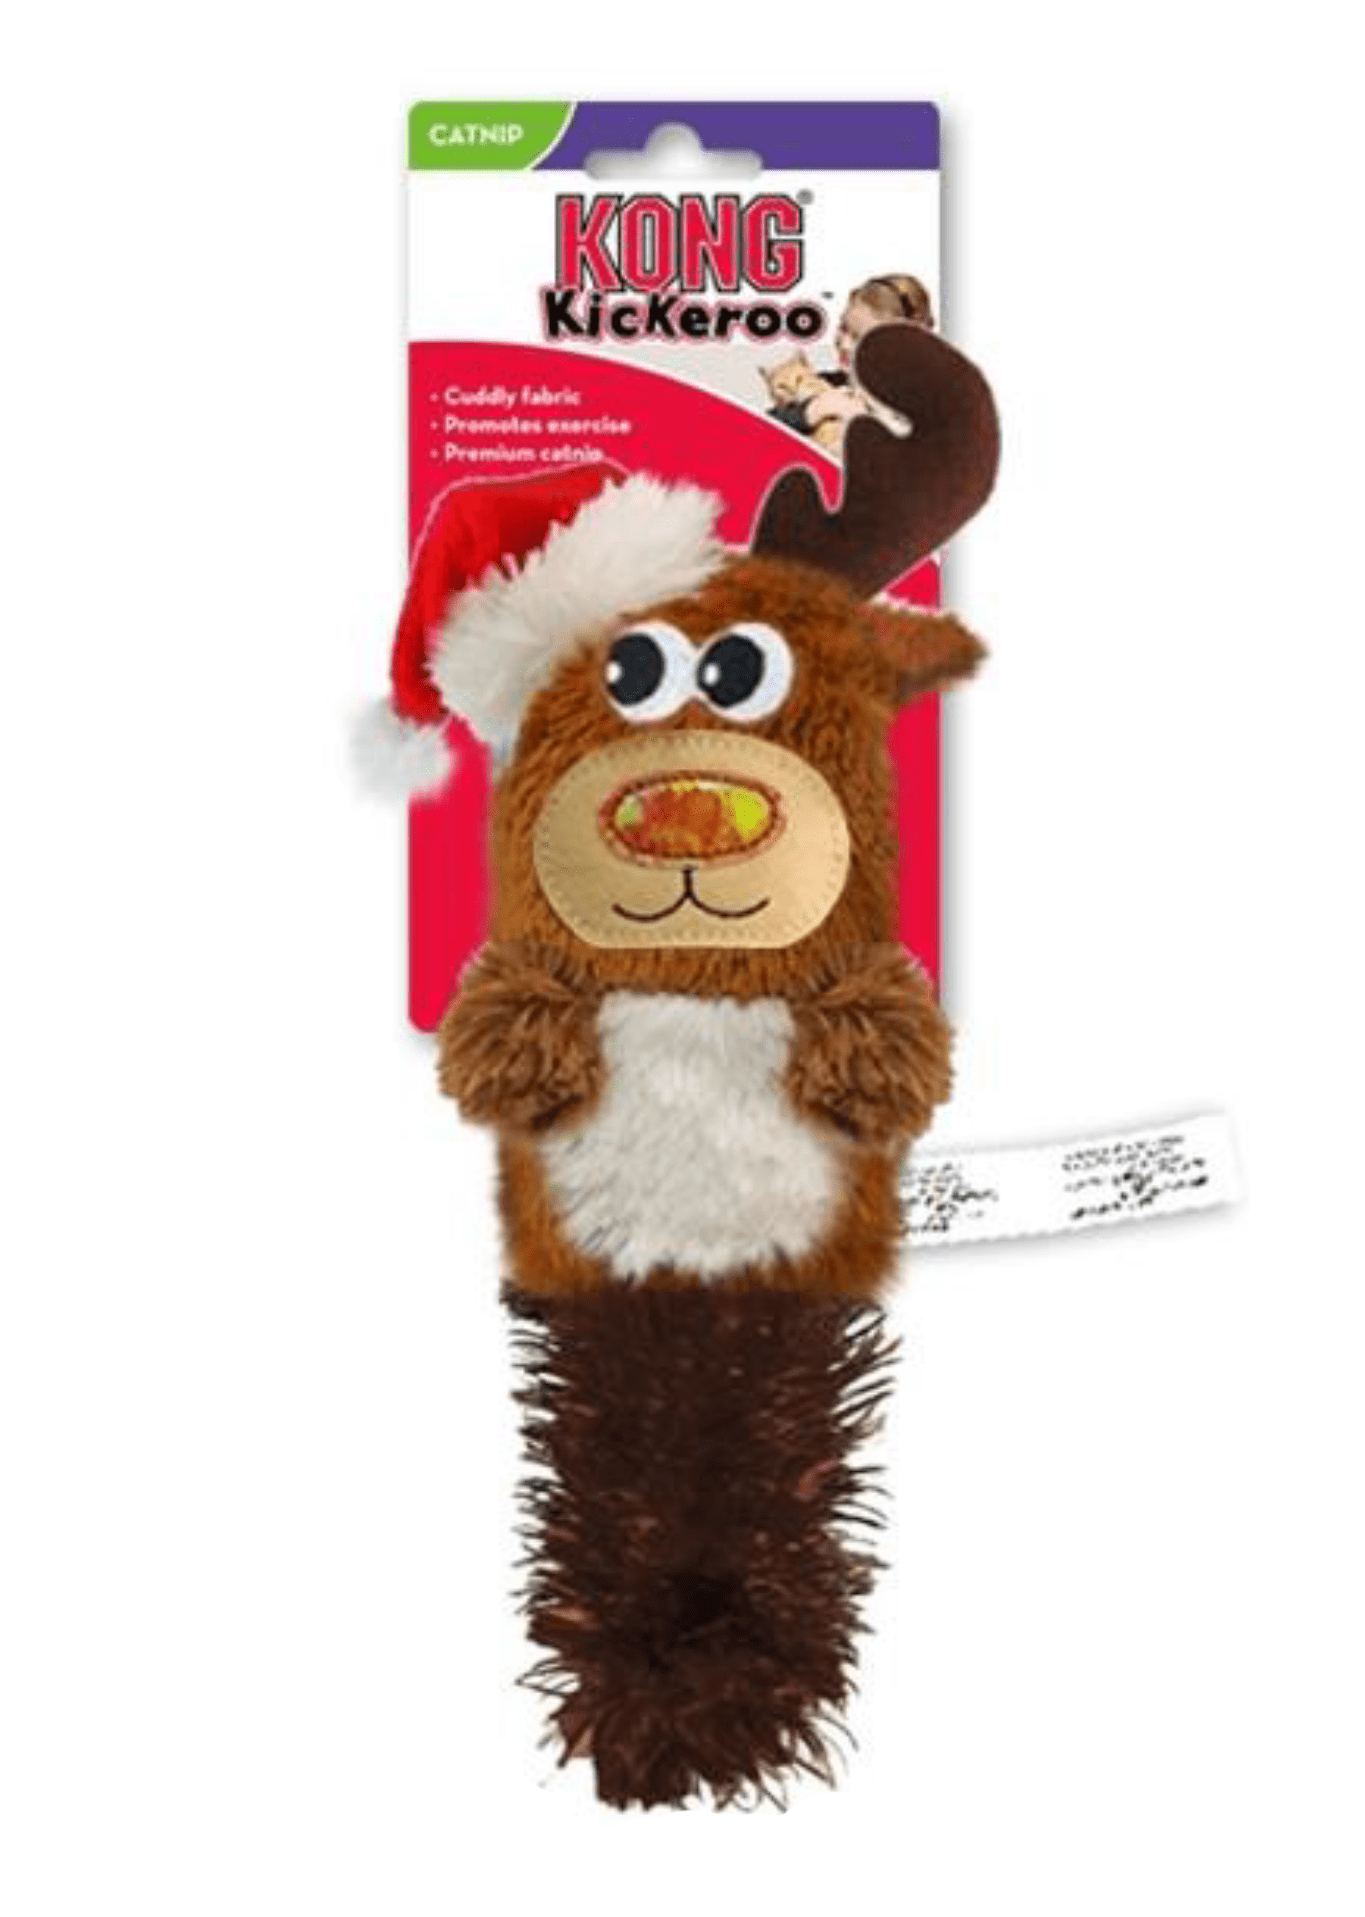 Kickeroo Reindeer